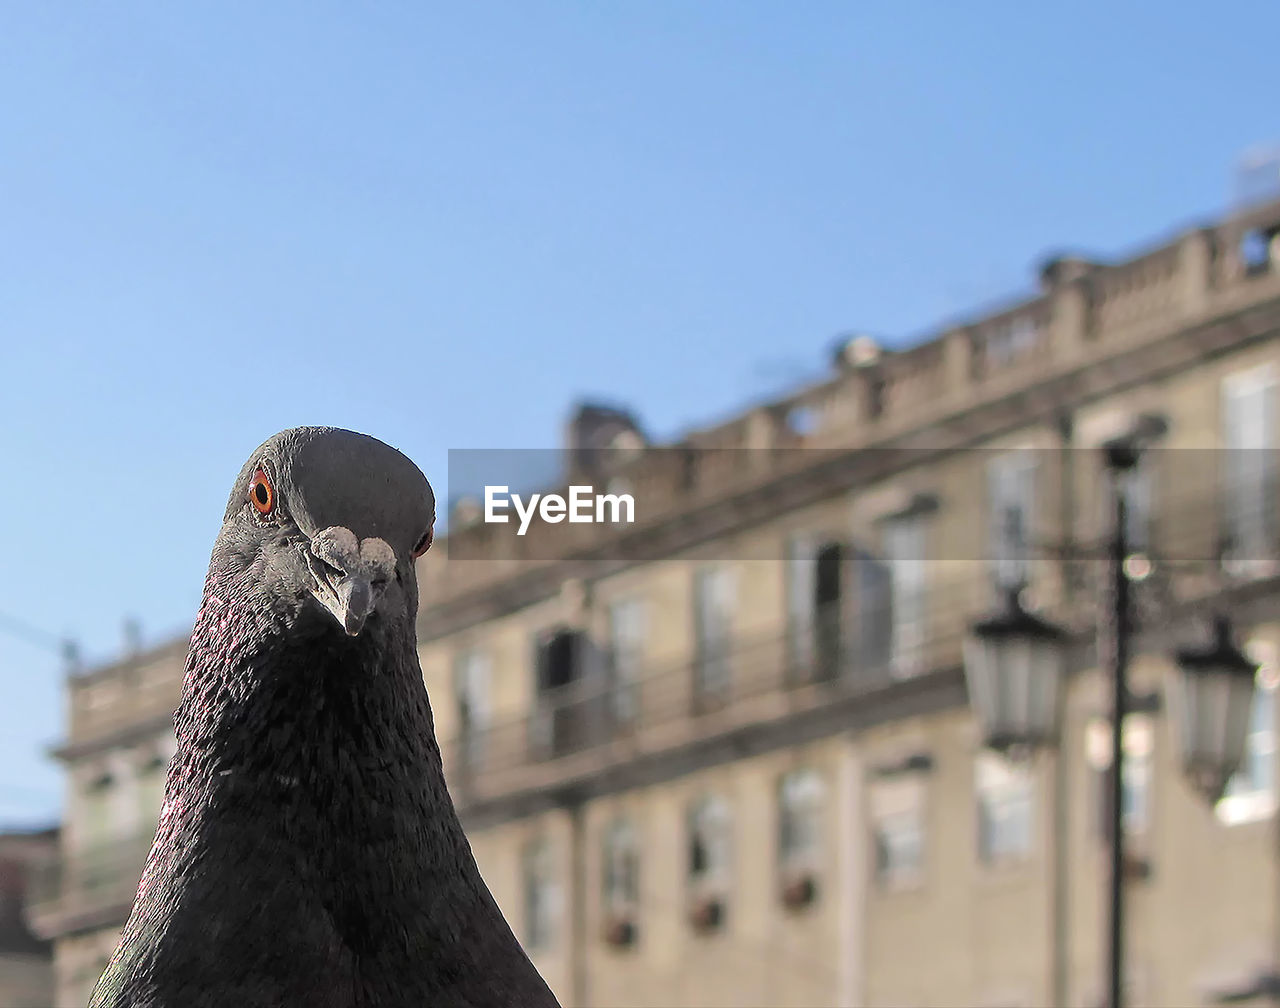 Close-up portrait of pigeon against building